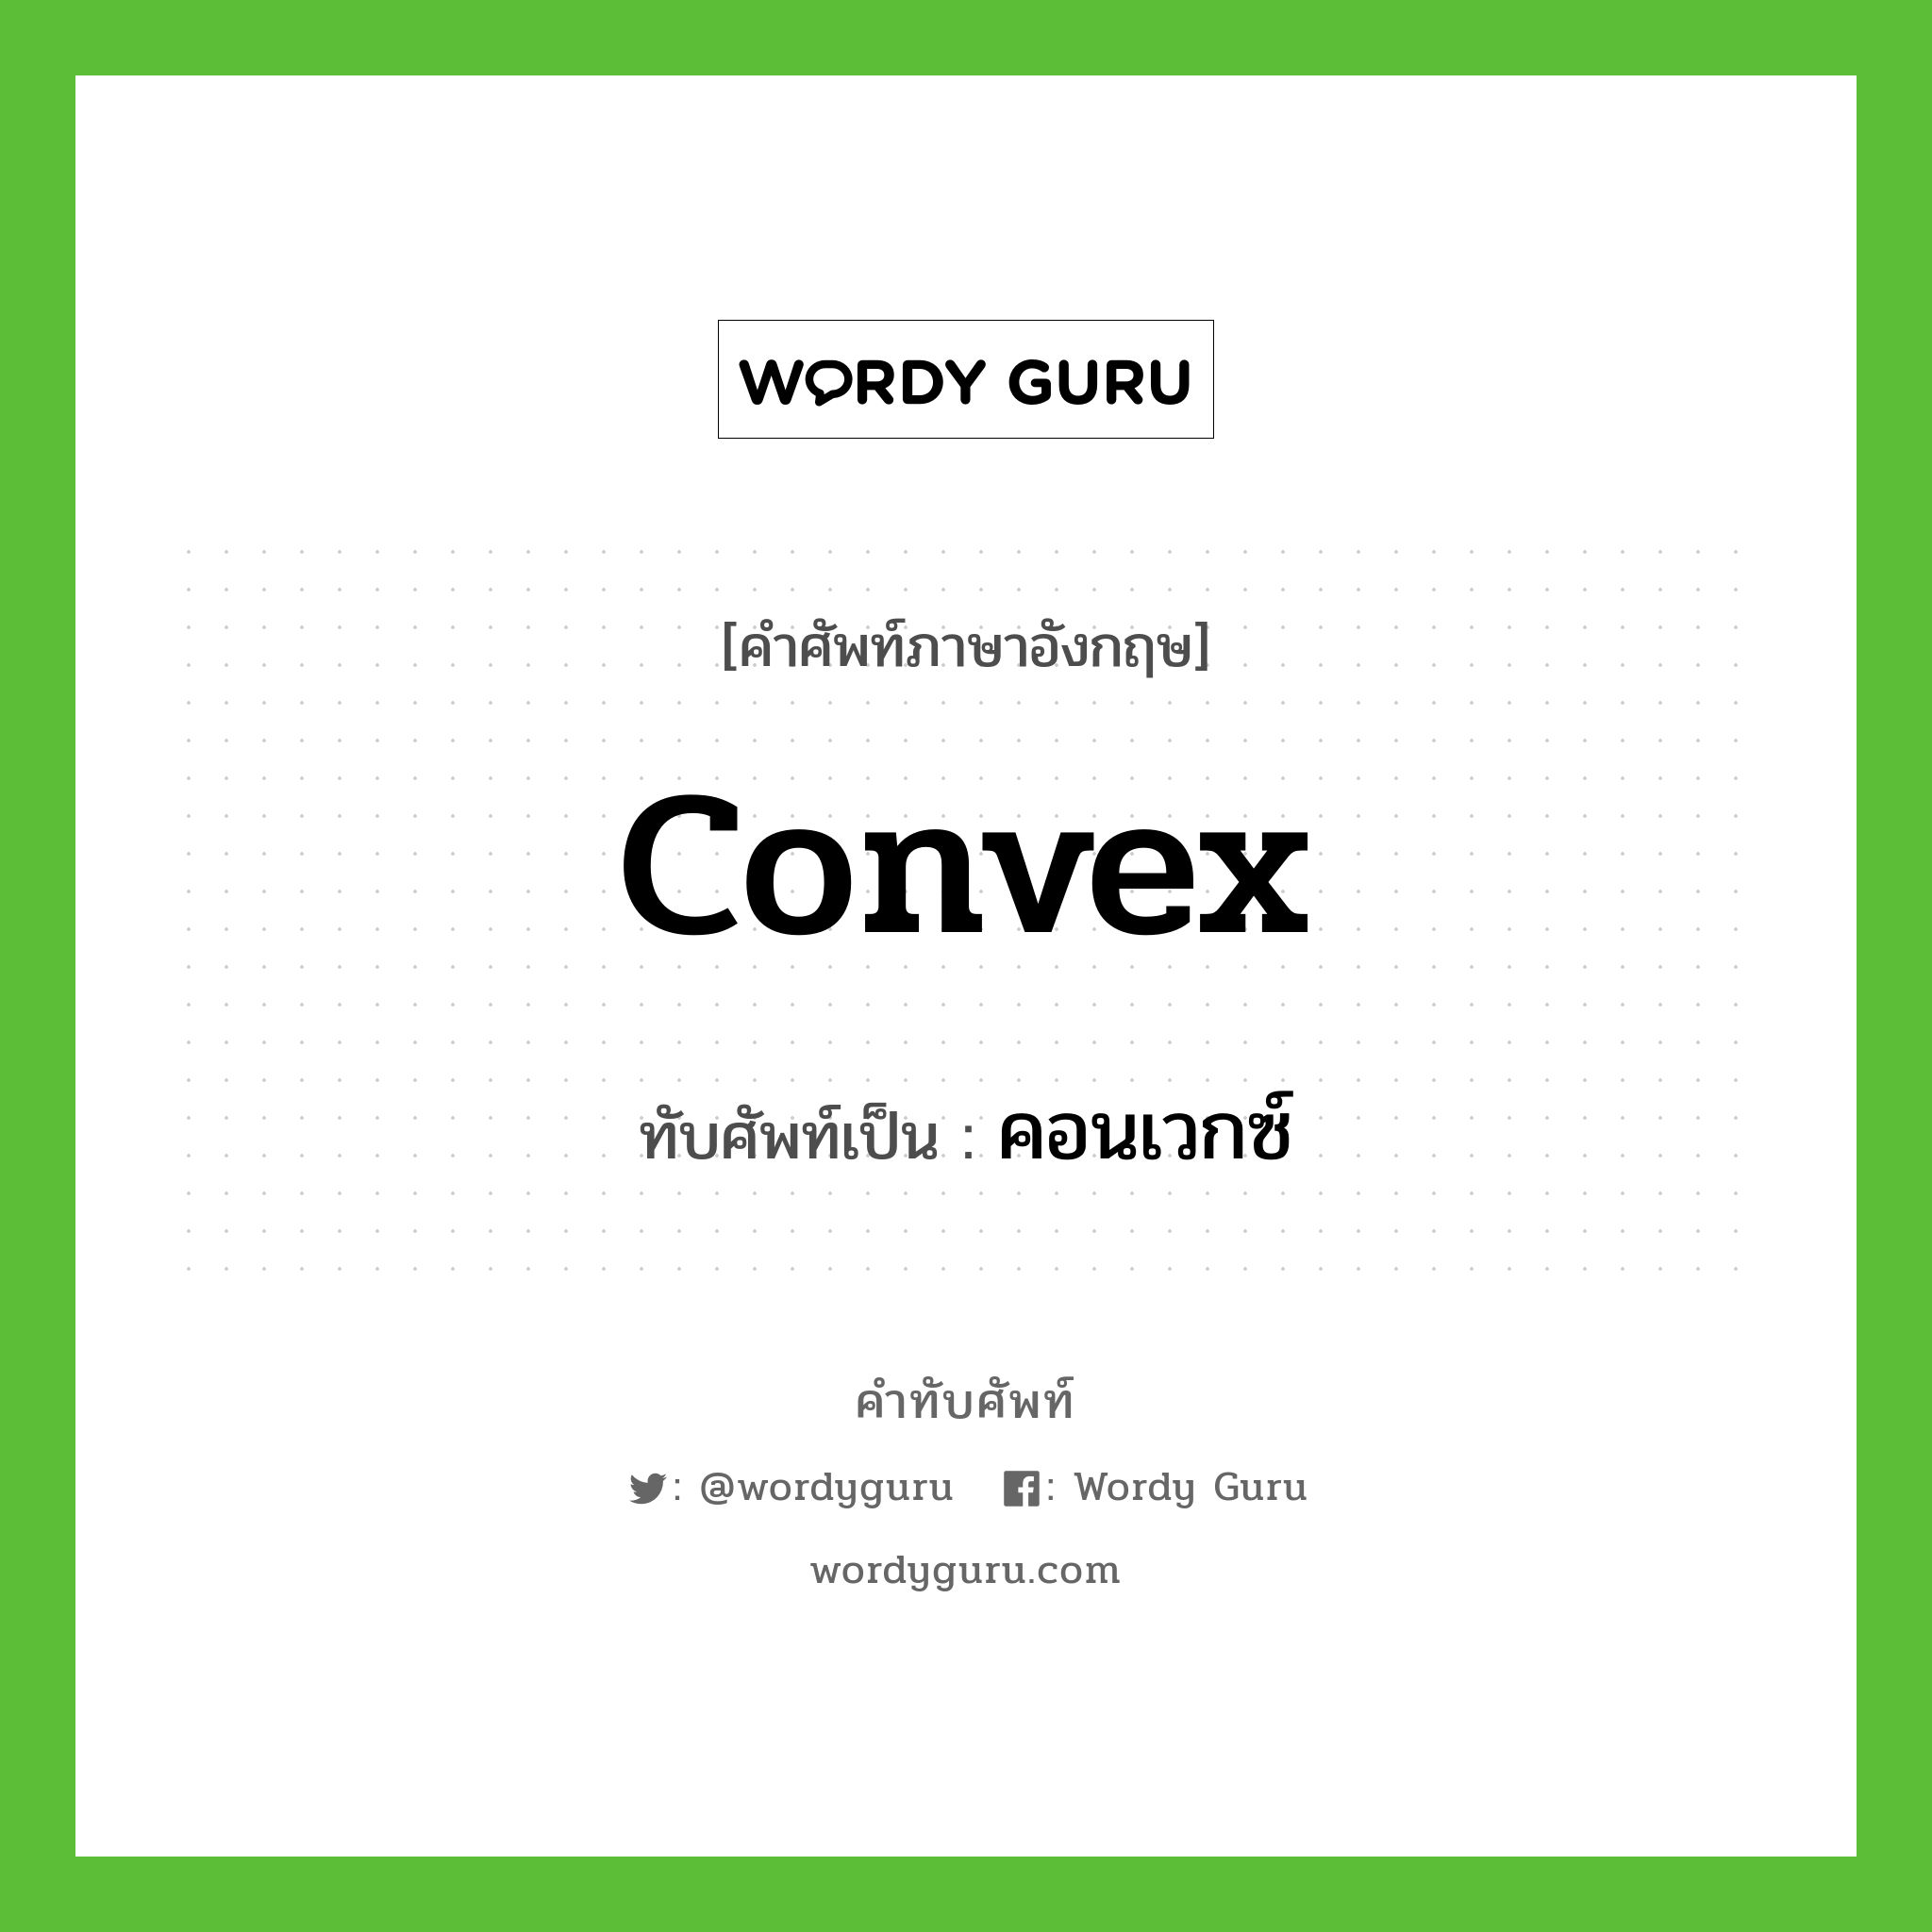 คอนเวกซ์ เขียนอย่างไร?, คำศัพท์ภาษาอังกฤษ คอนเวกซ์ ทับศัพท์เป็น convex